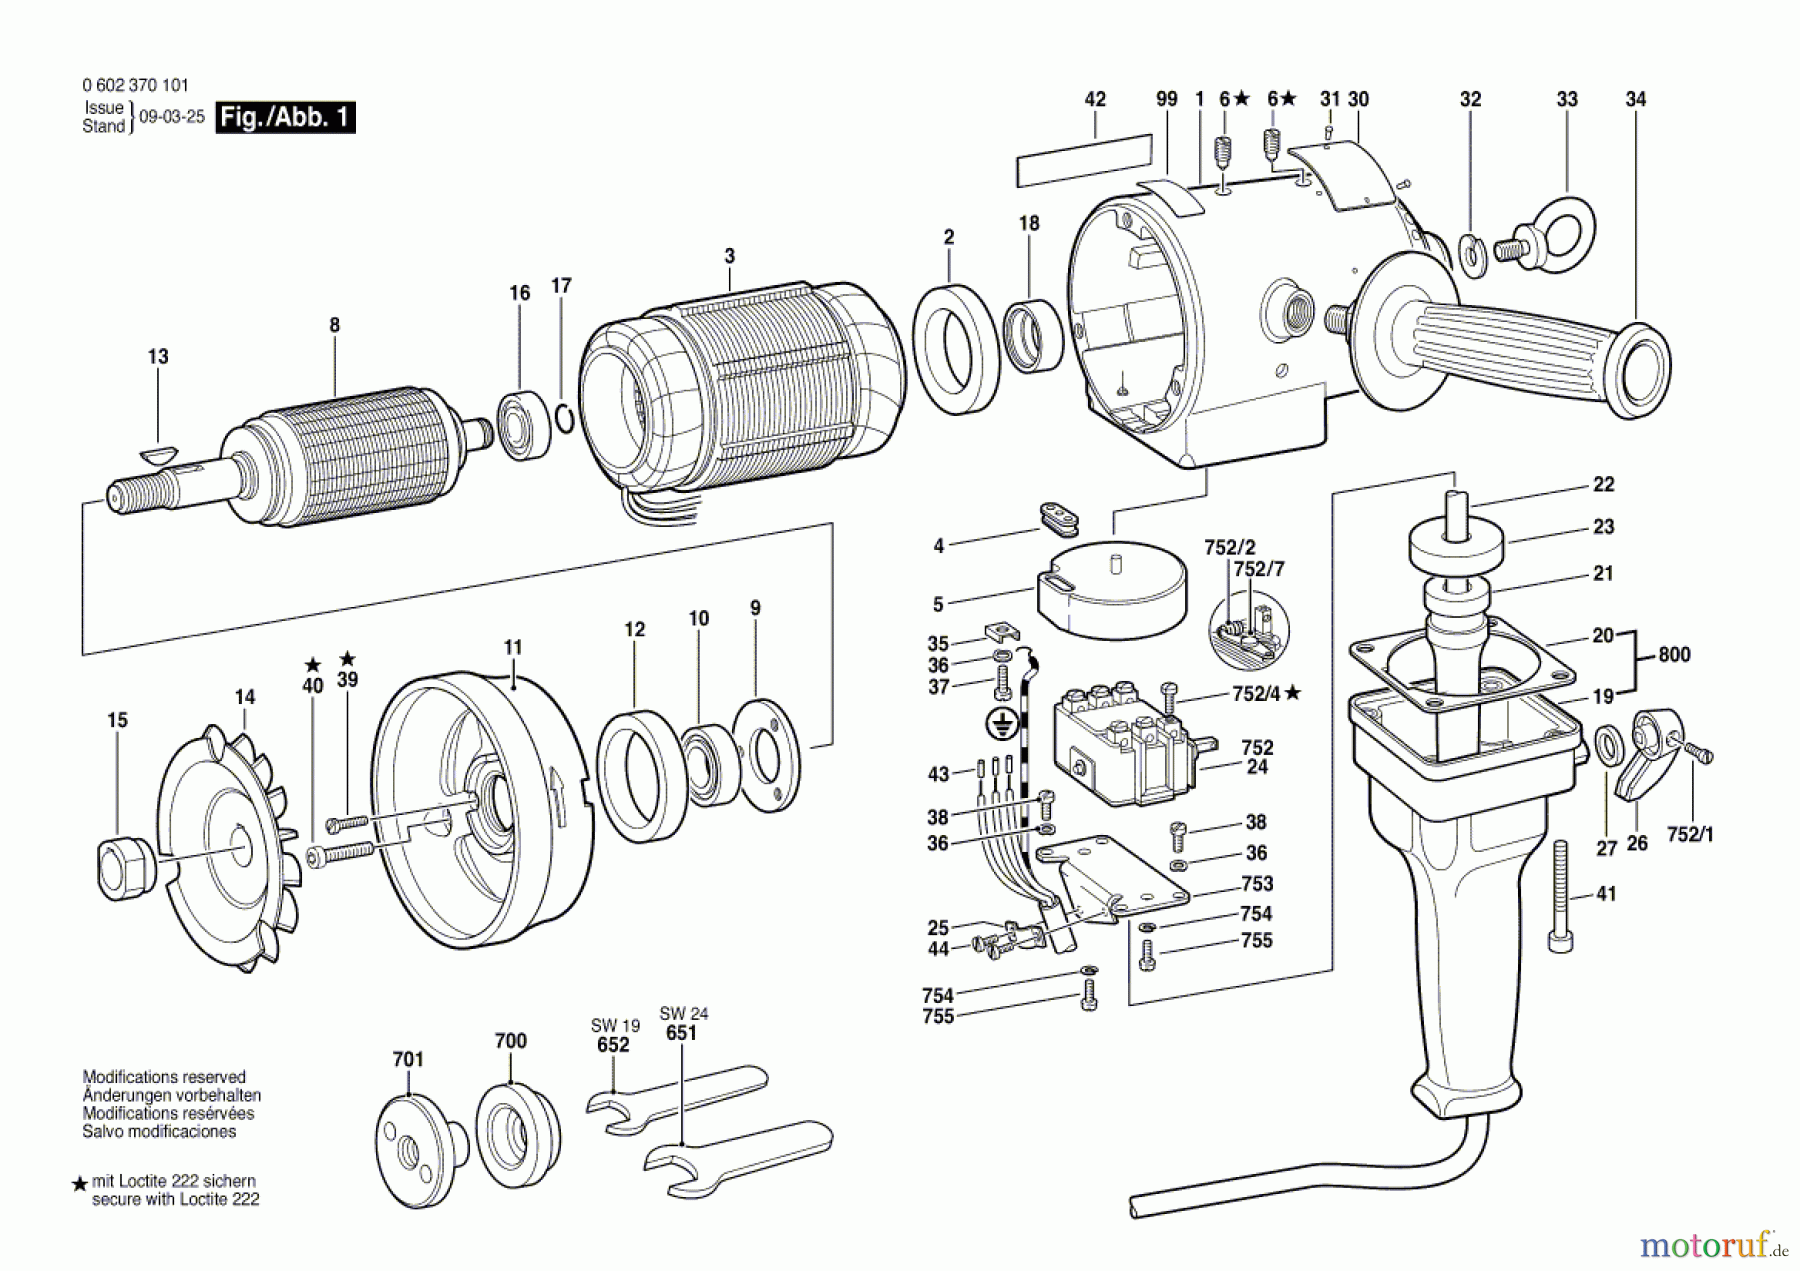  Bosch Werkzeug Hf-Tellerschleifer GR.86 Seite 1